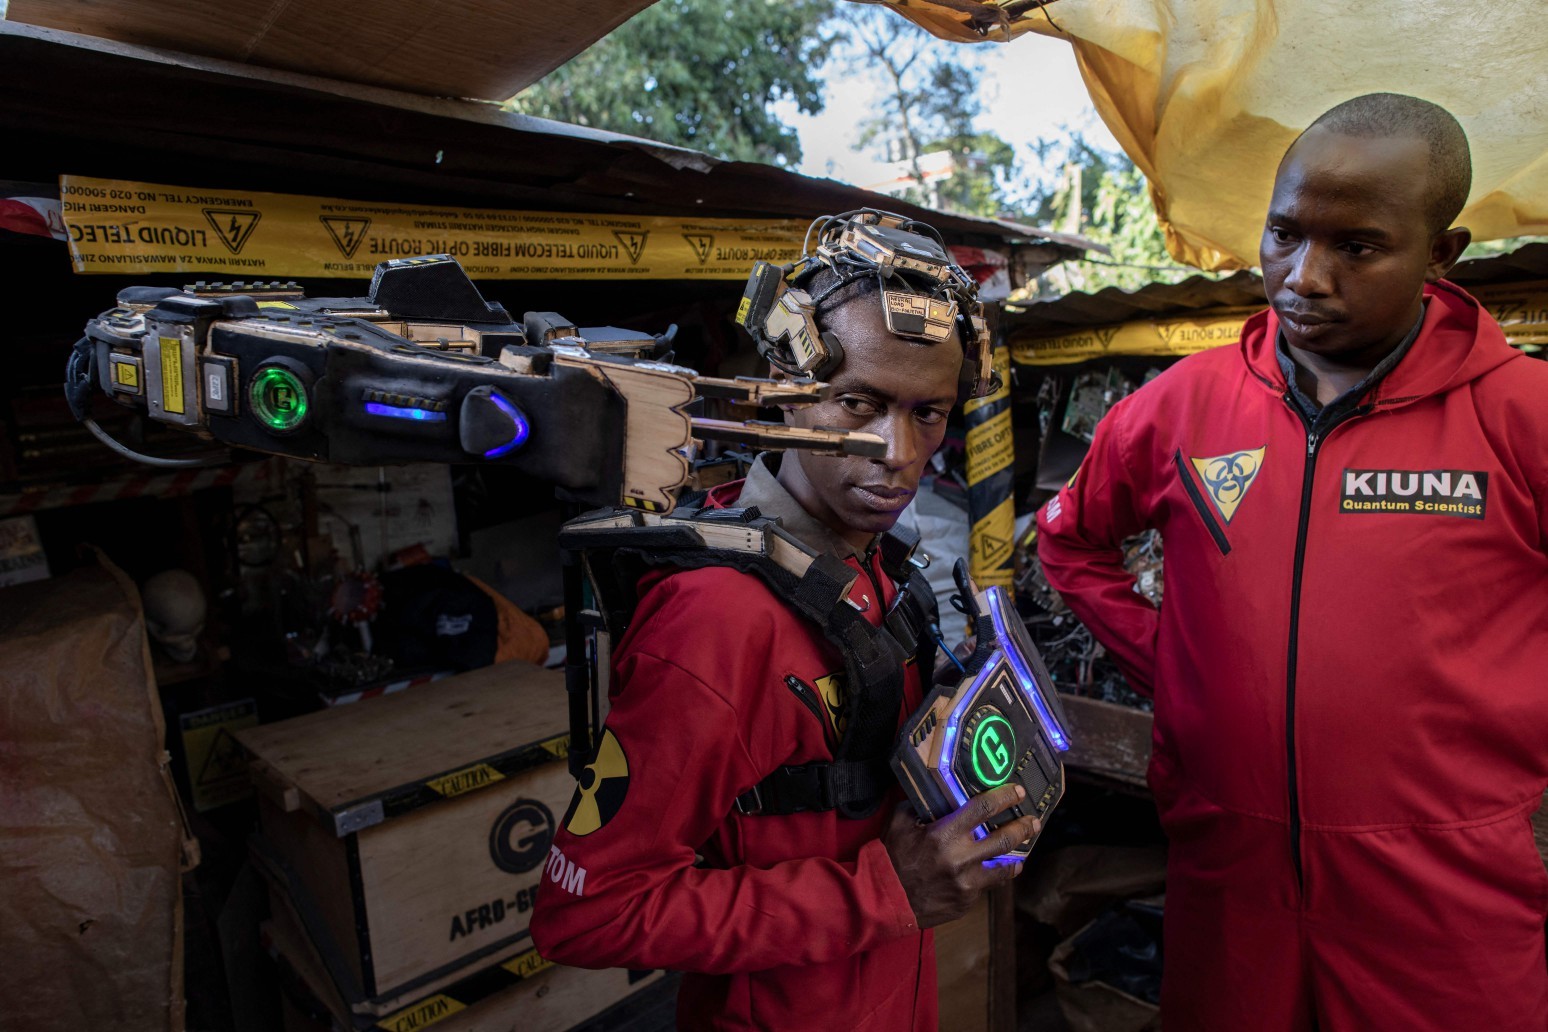 David Gathu e Moses Kiuna demonstram a operação de uma prótese biorrobótica — Foto: Tony KARUMBA / AFP